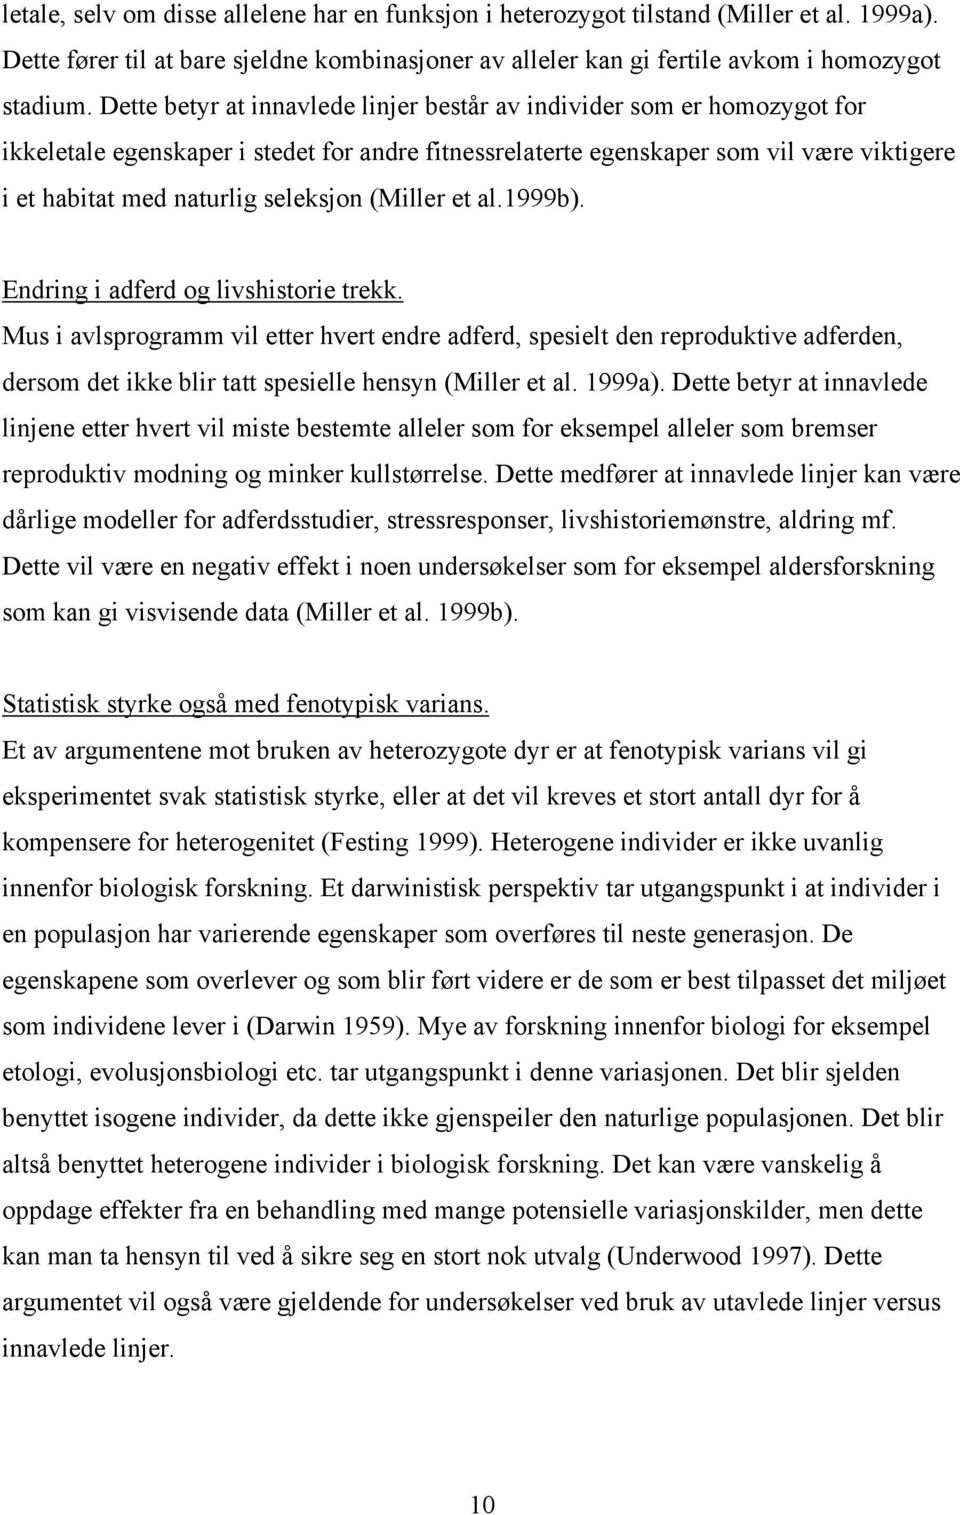 seleksjon (Miller et al.1999b). Endring i adferd og livshistorie trekk.